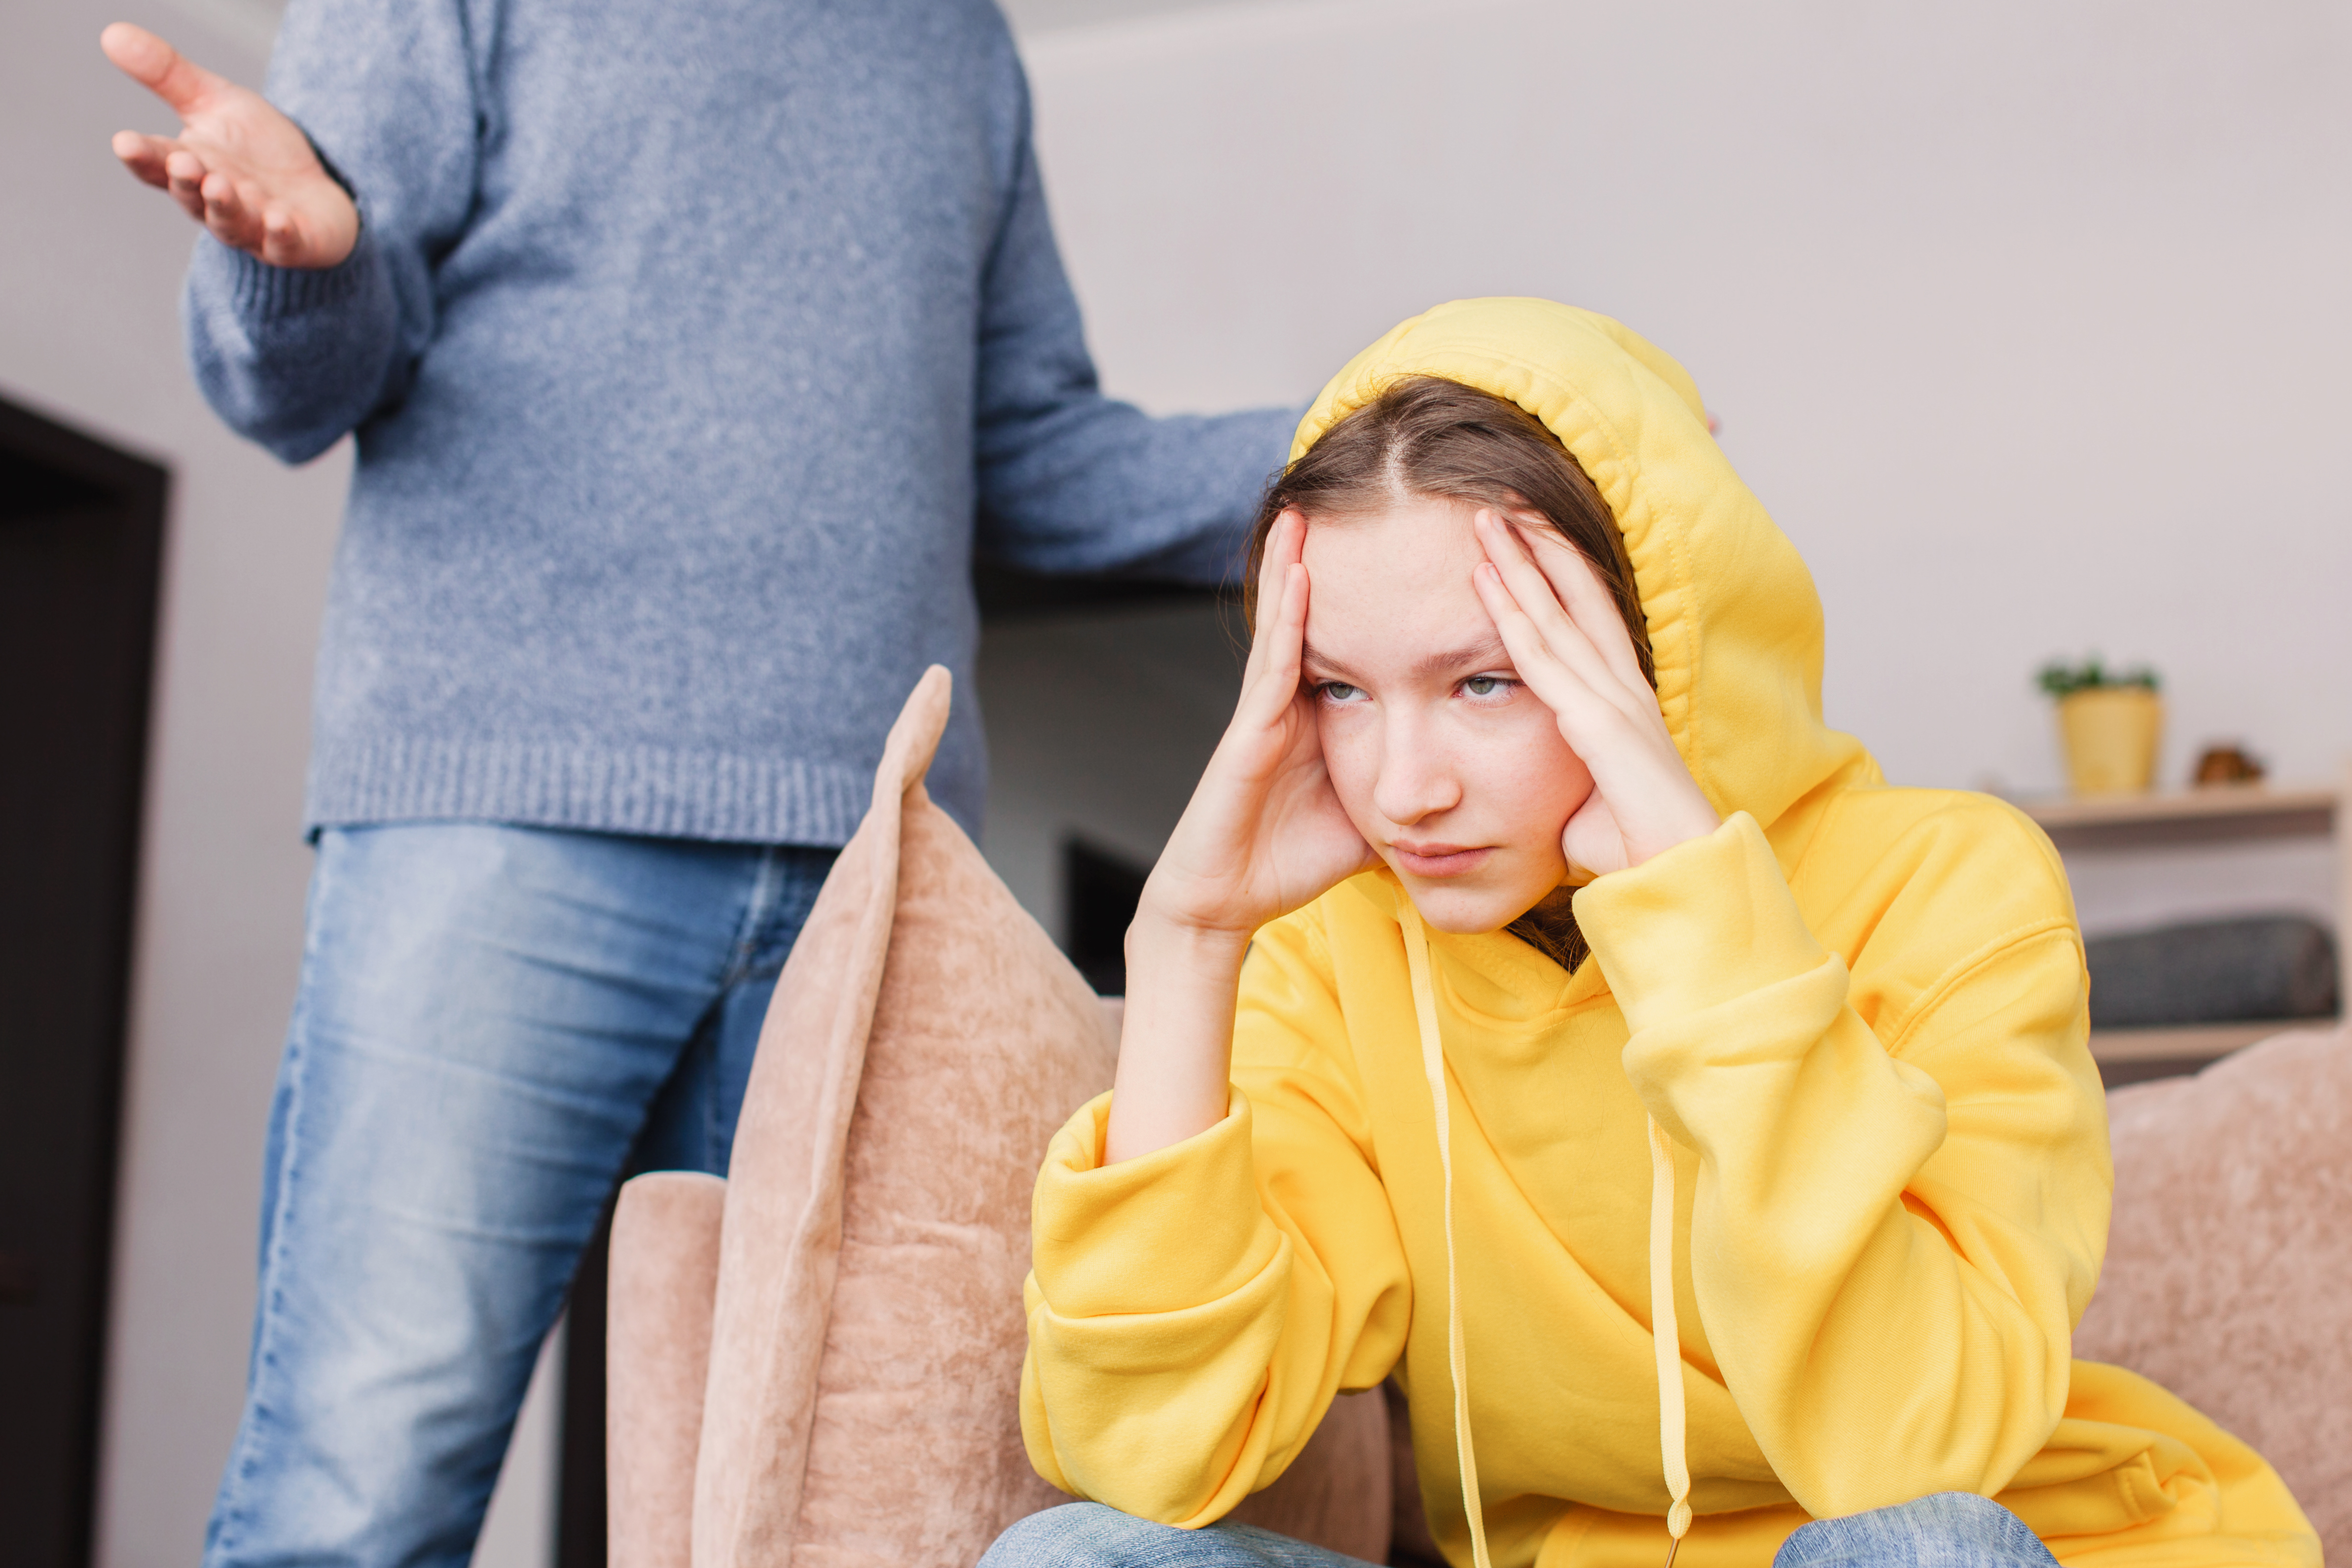 Padre enfadado papá decir quejas sermoneando adolescente hijo adulto sentirse estresado | Foto: Getty Images